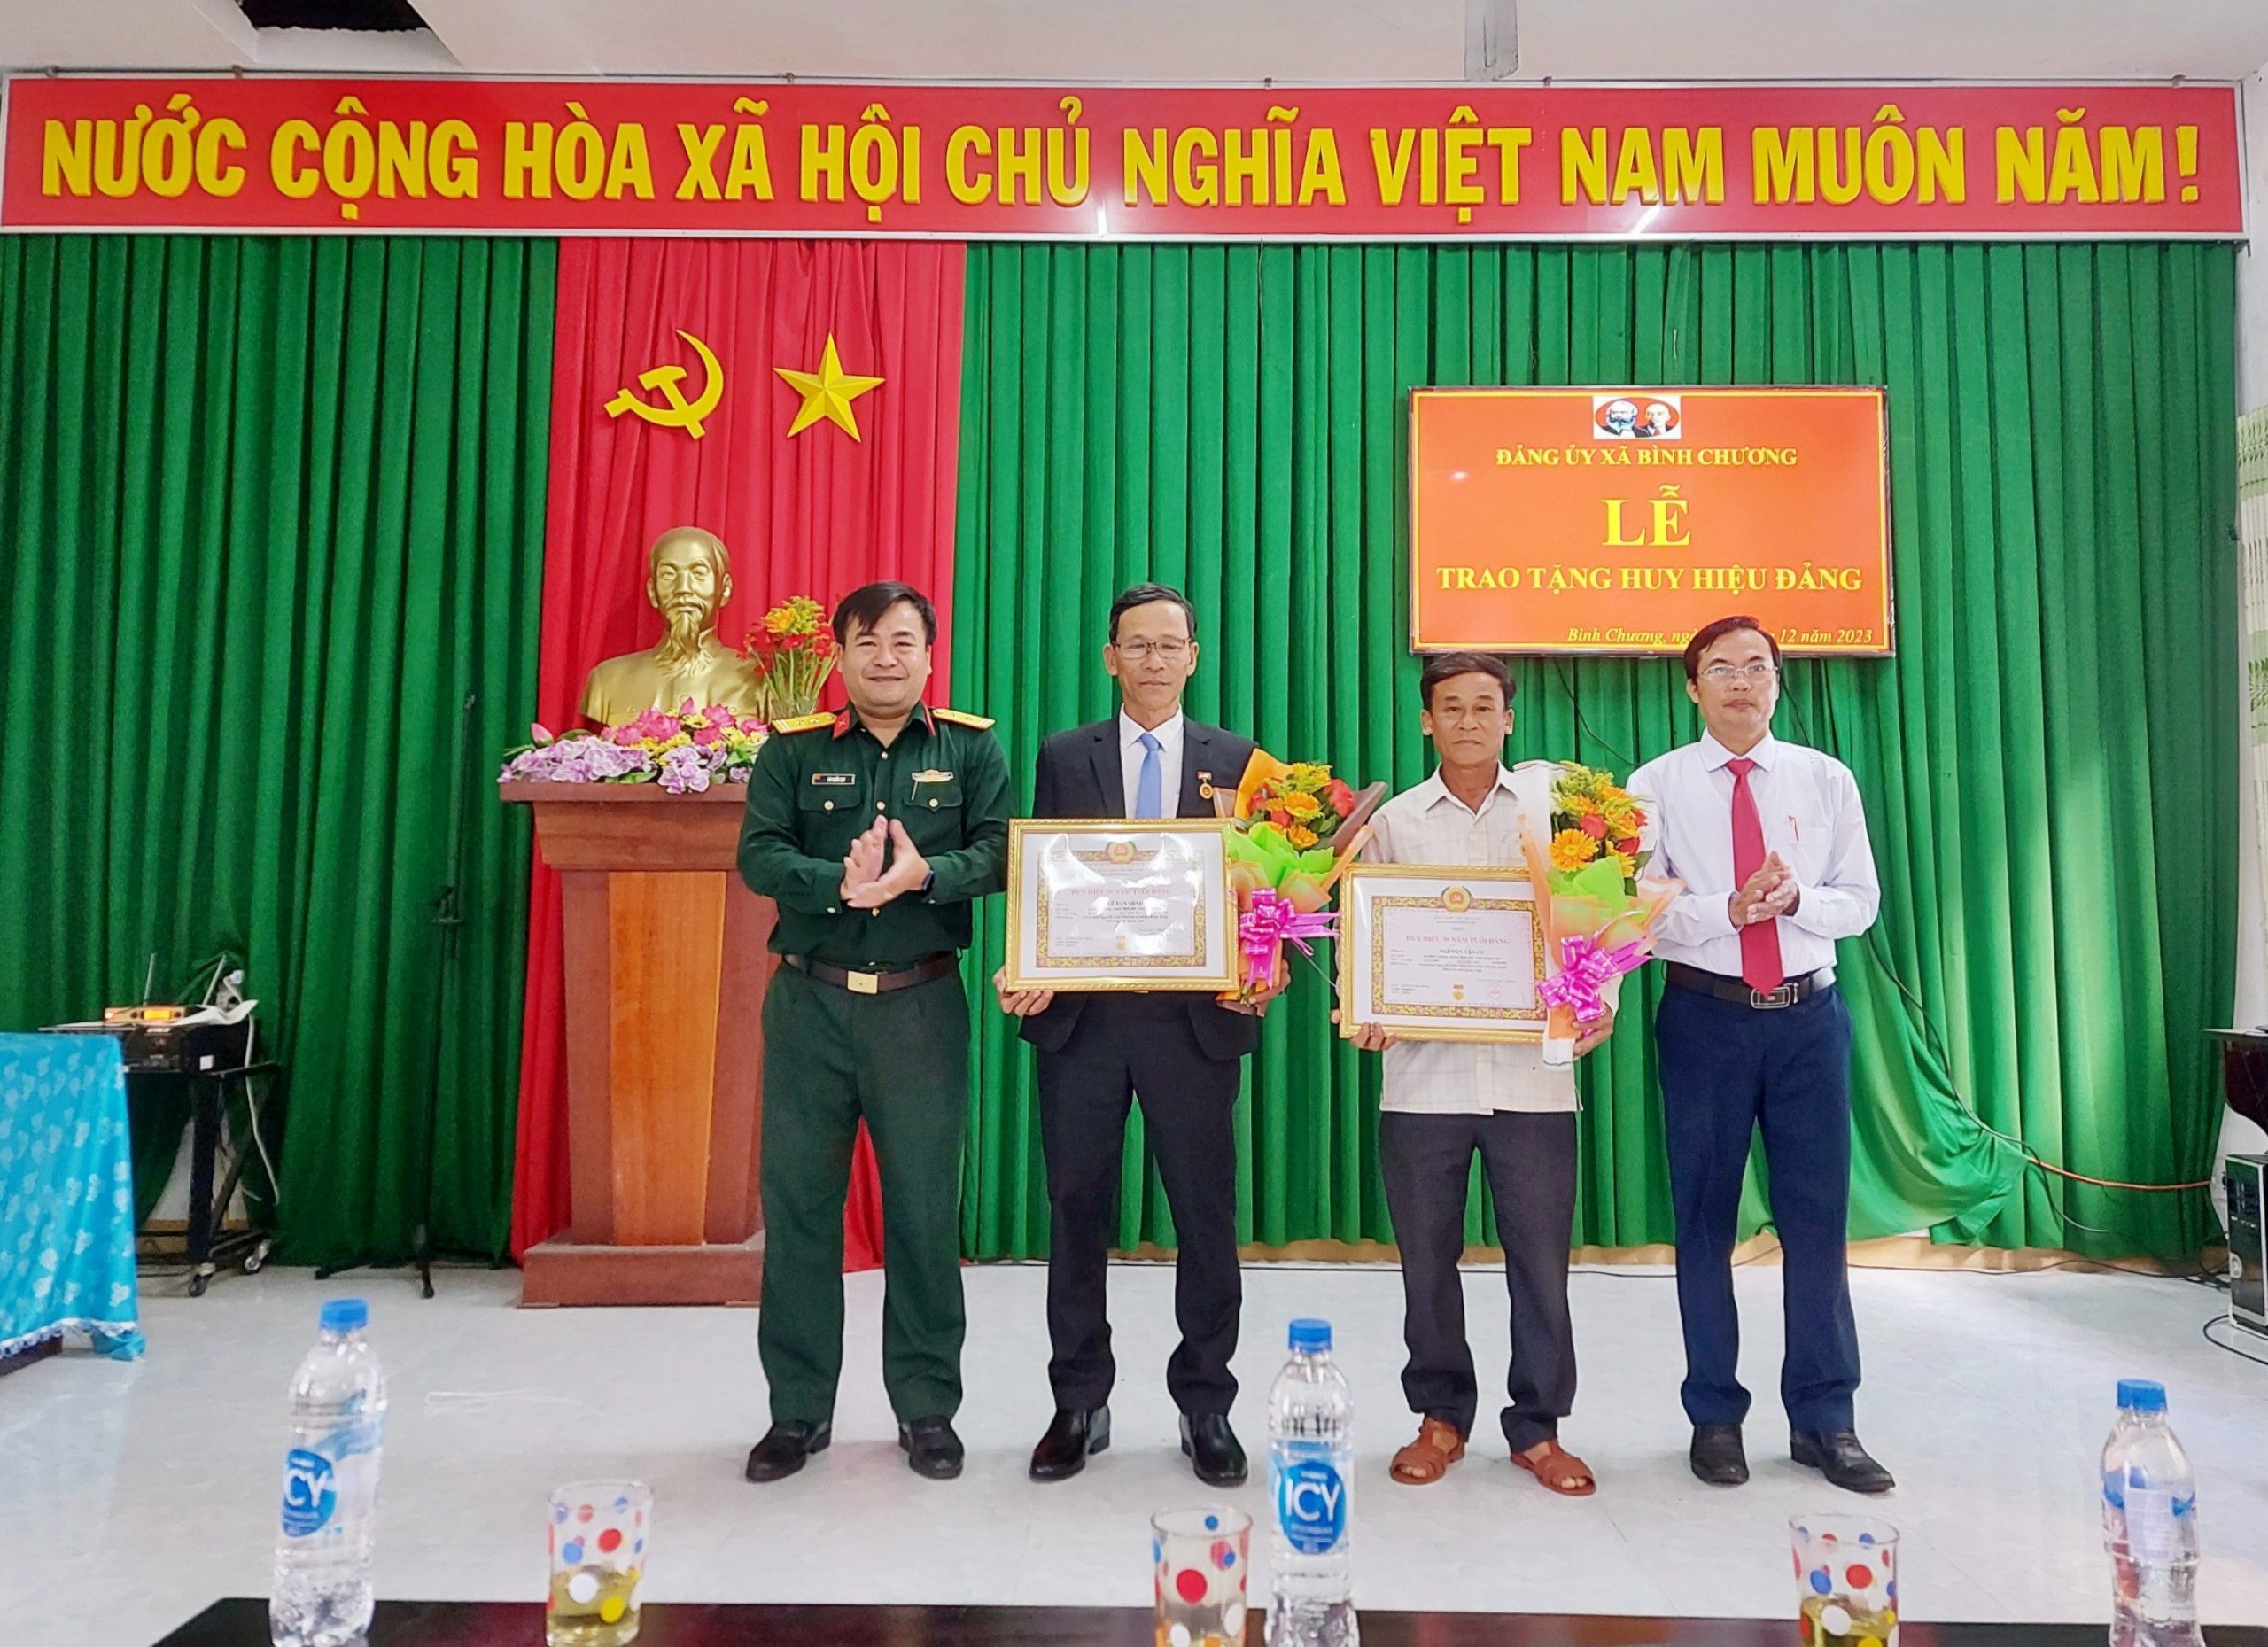 Đảng bộ xã Bình Chương tổ chức Lễ trao tặng Huy hiệu Đảng